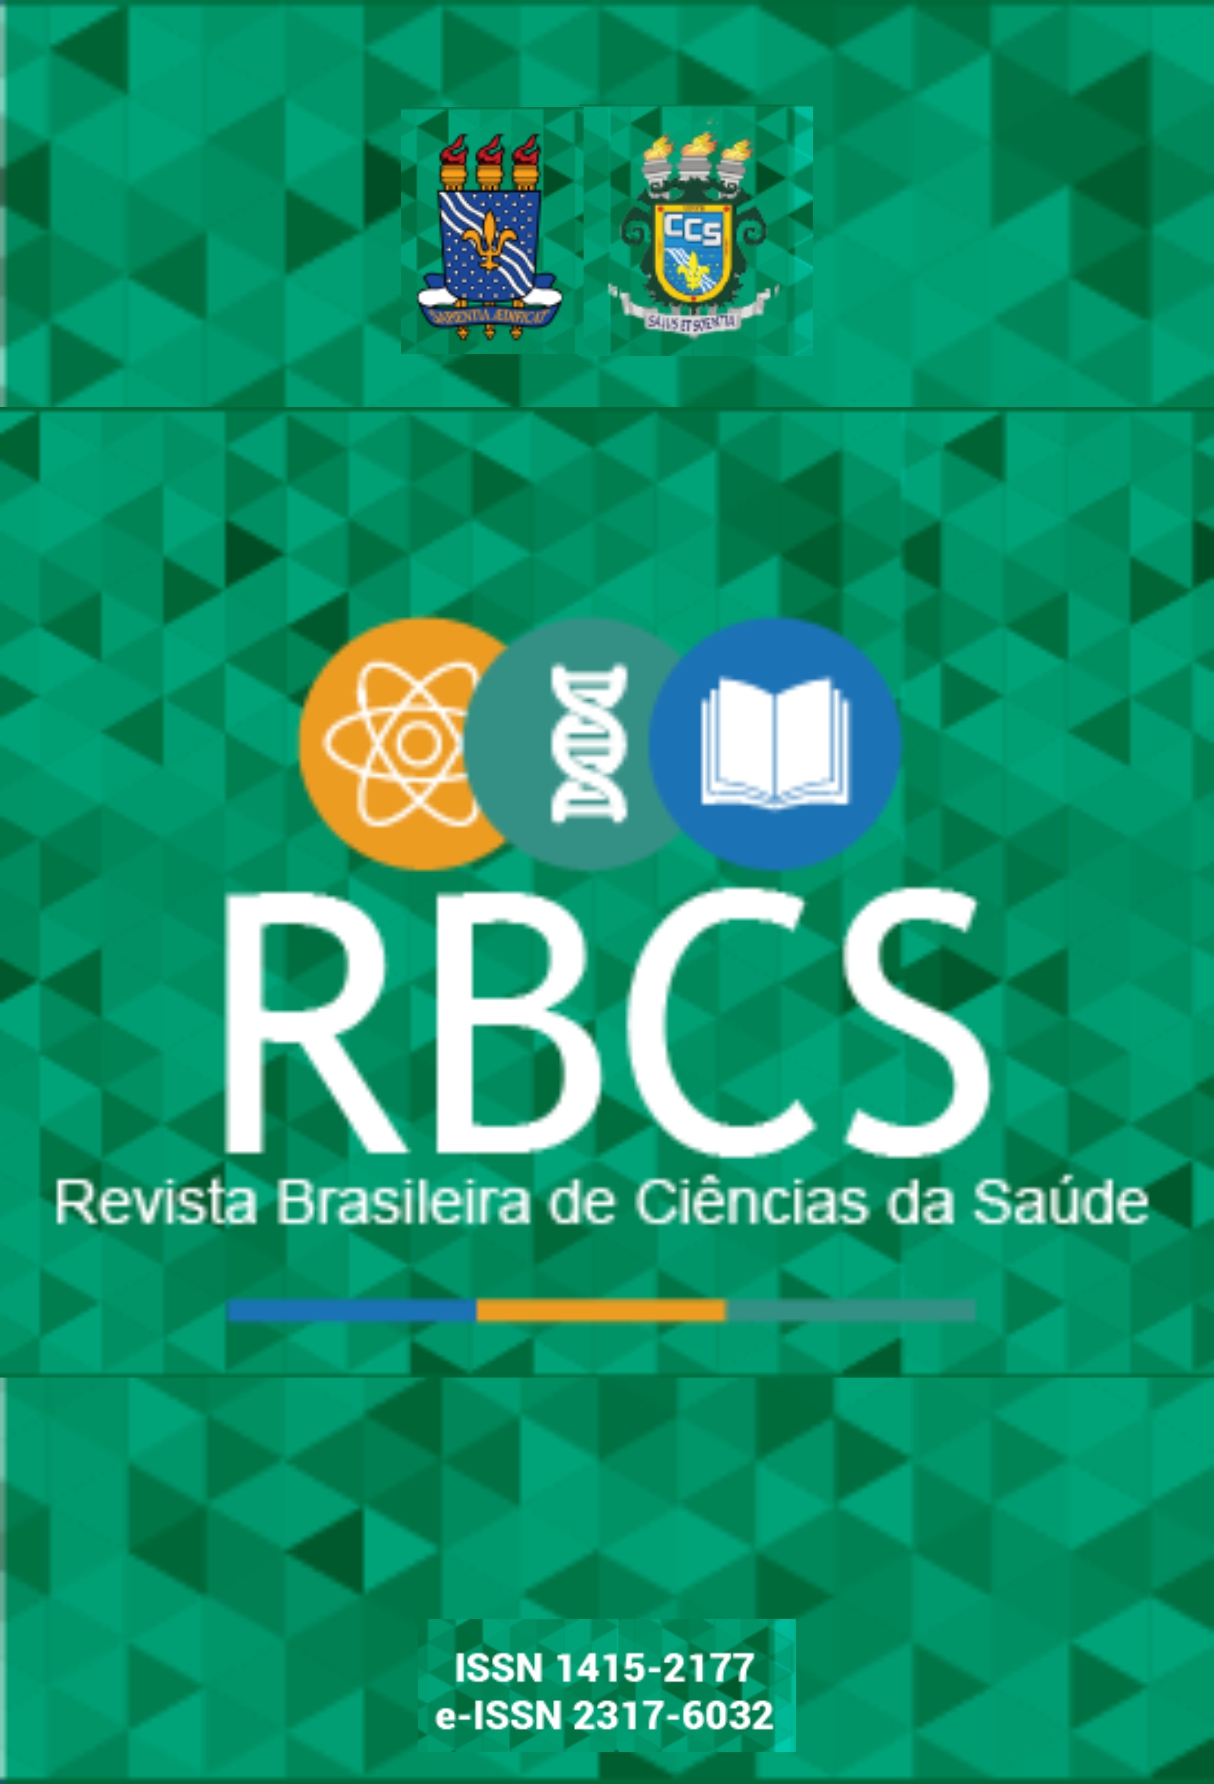 Capa: Revista Brasileira de Ciências da Saúde